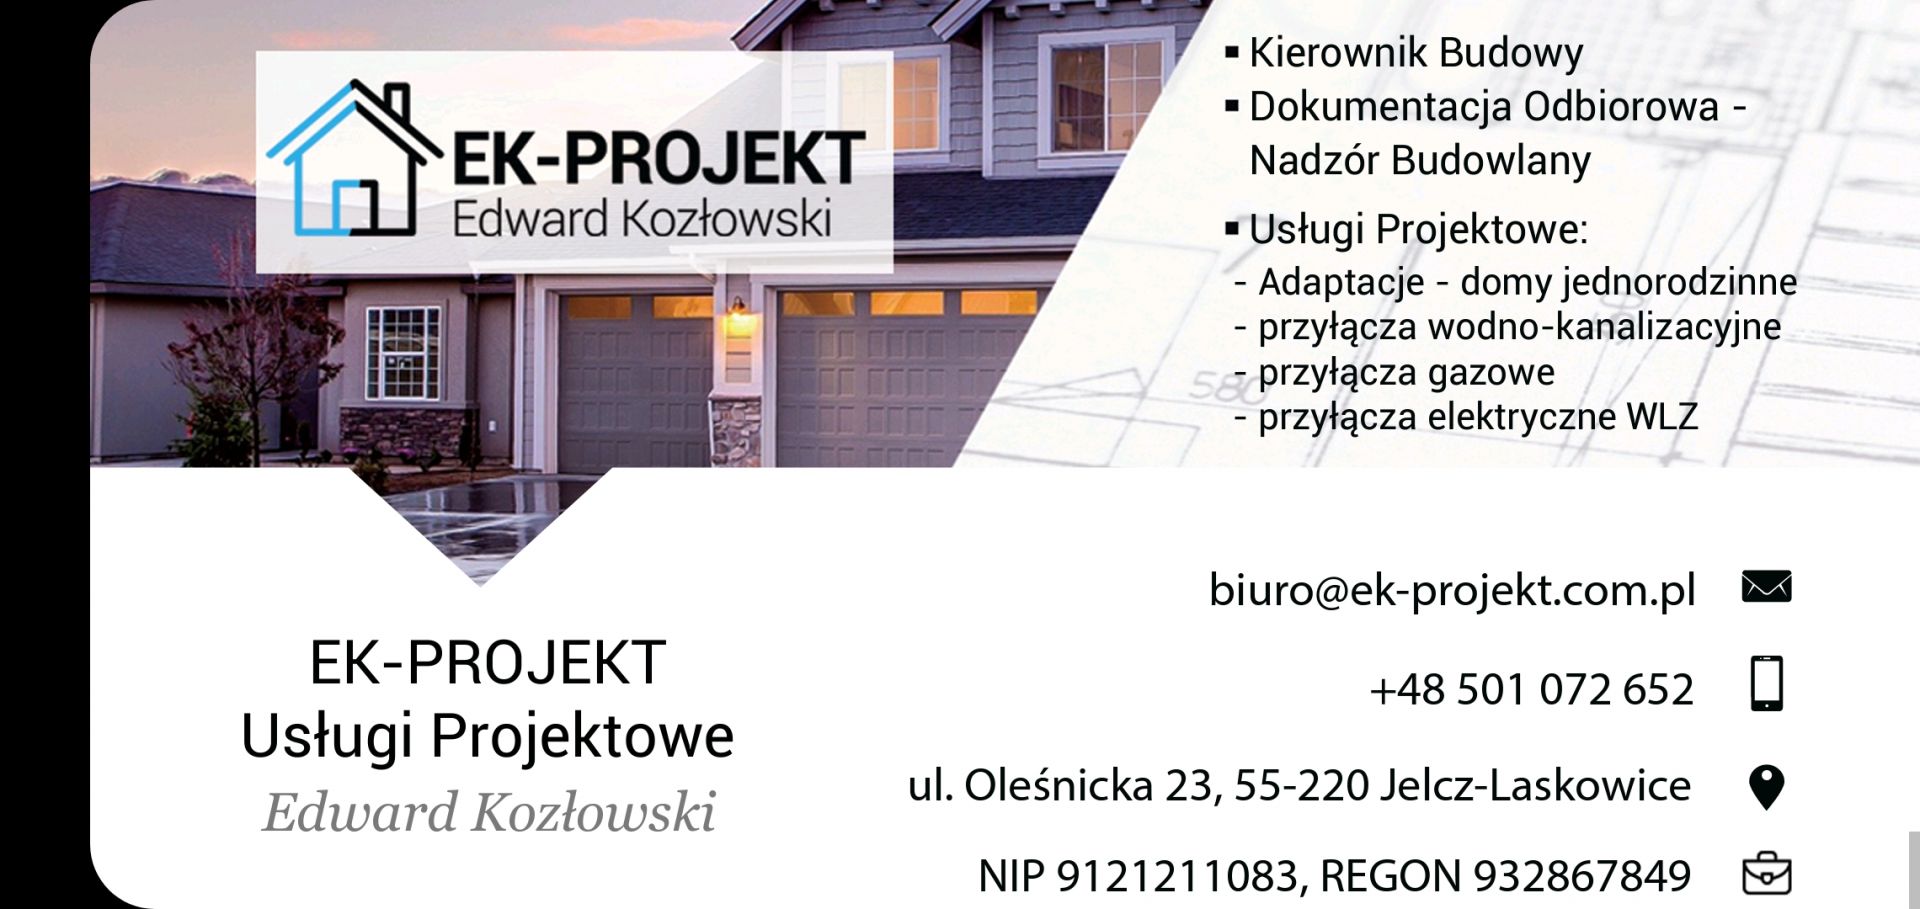 Biuro Projektowe Adaptacje projektów, przyłącza wod-kan, gaz, WLZ, pompy ciepła Wrocław / Jelcz-Laskowice - Zdjęcie 1